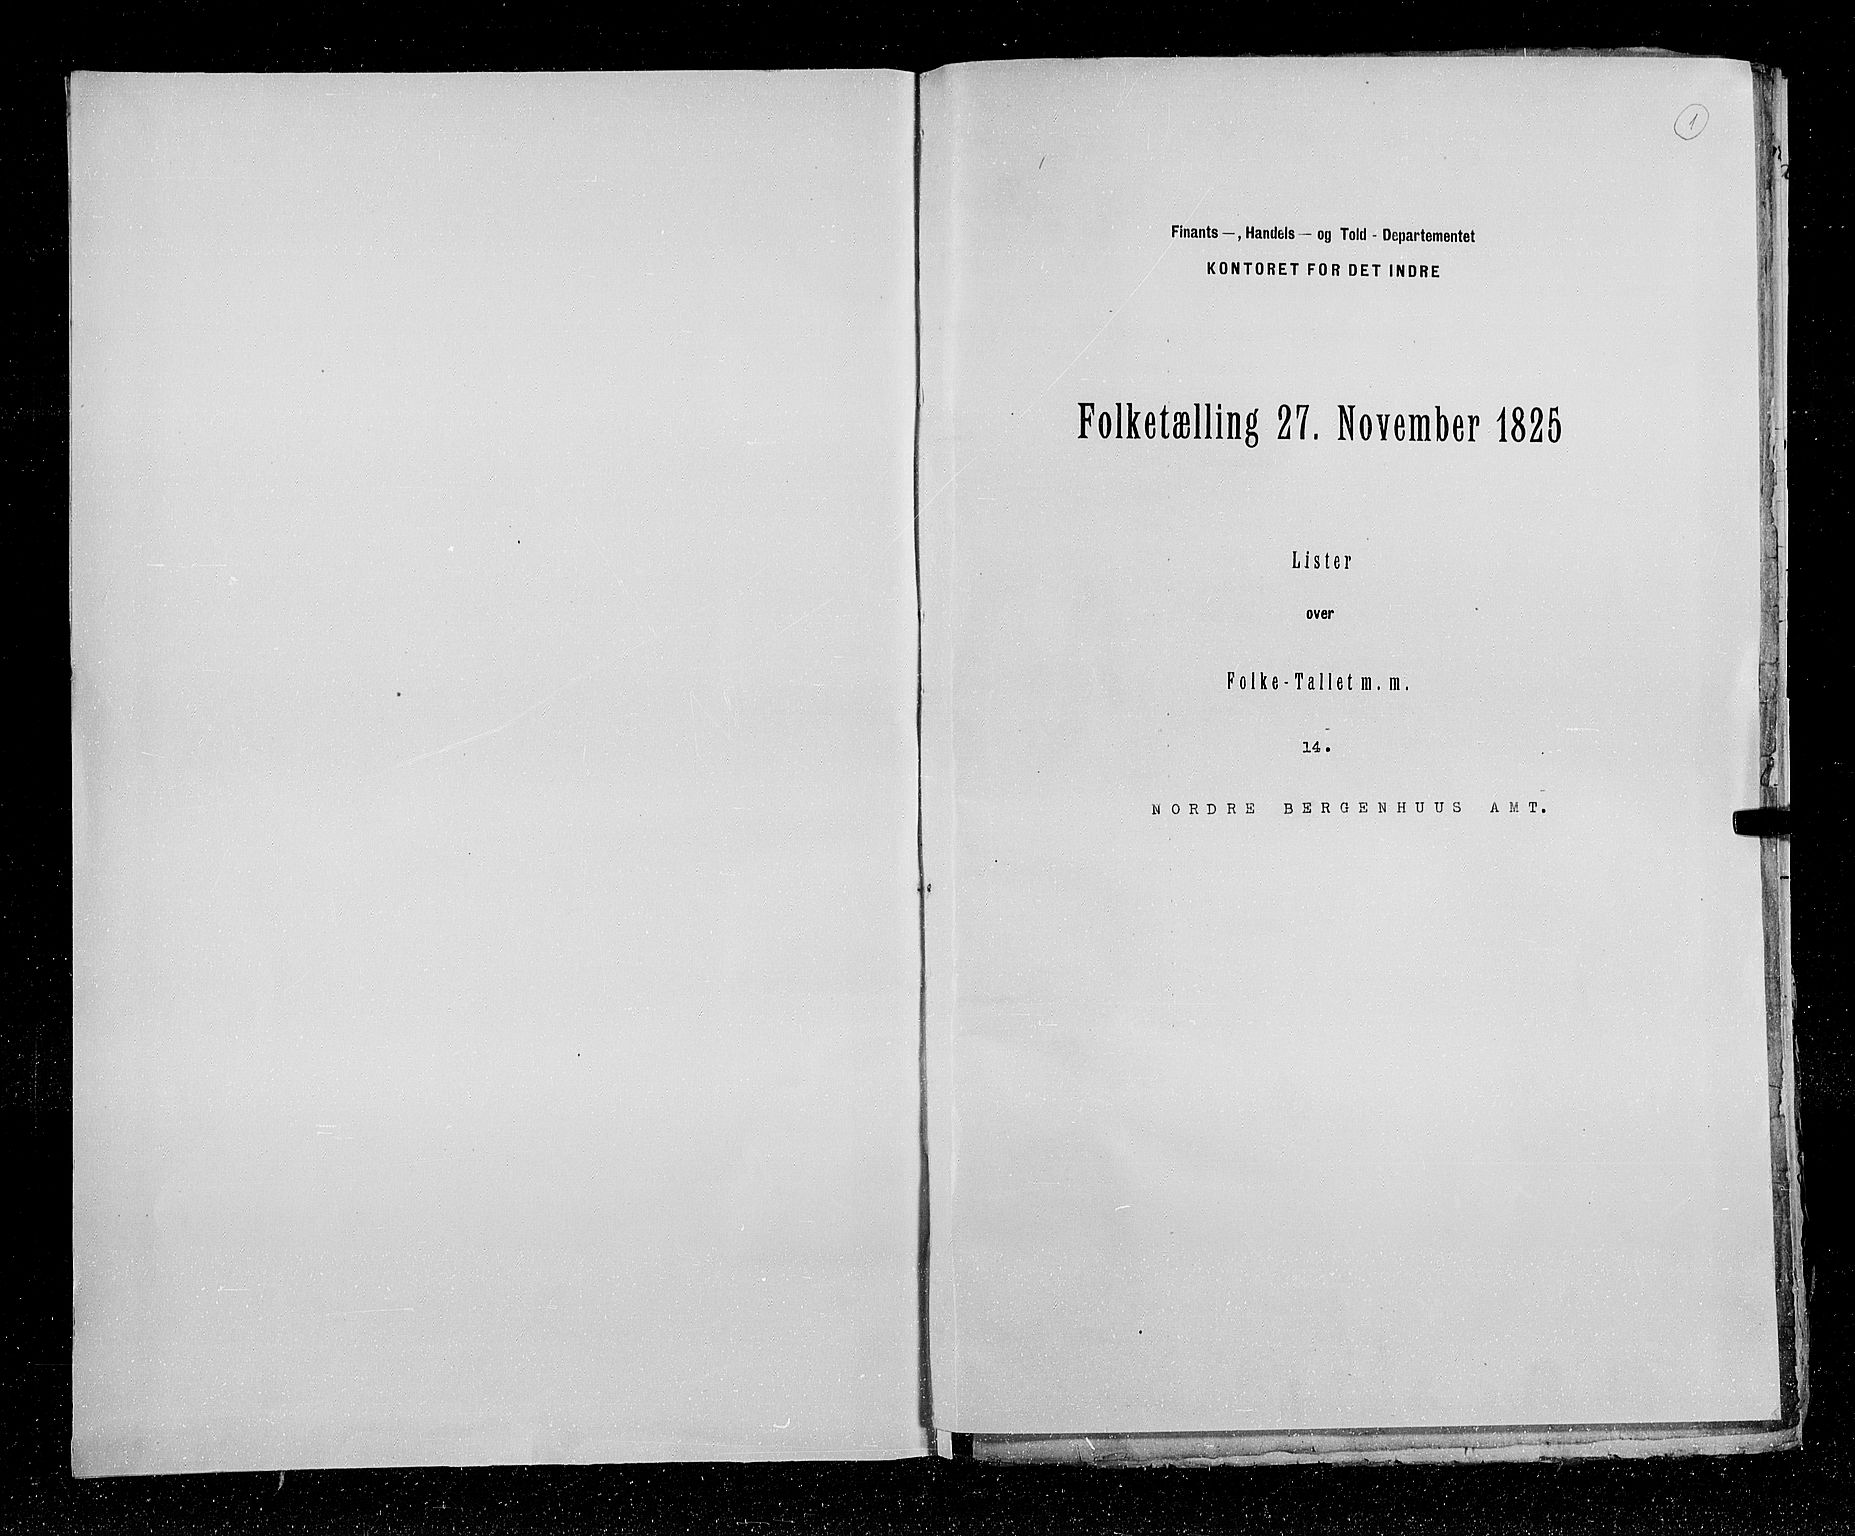 RA, Census 1825, vol. 14: Nordre Bergenhus amt, 1825, p. 1